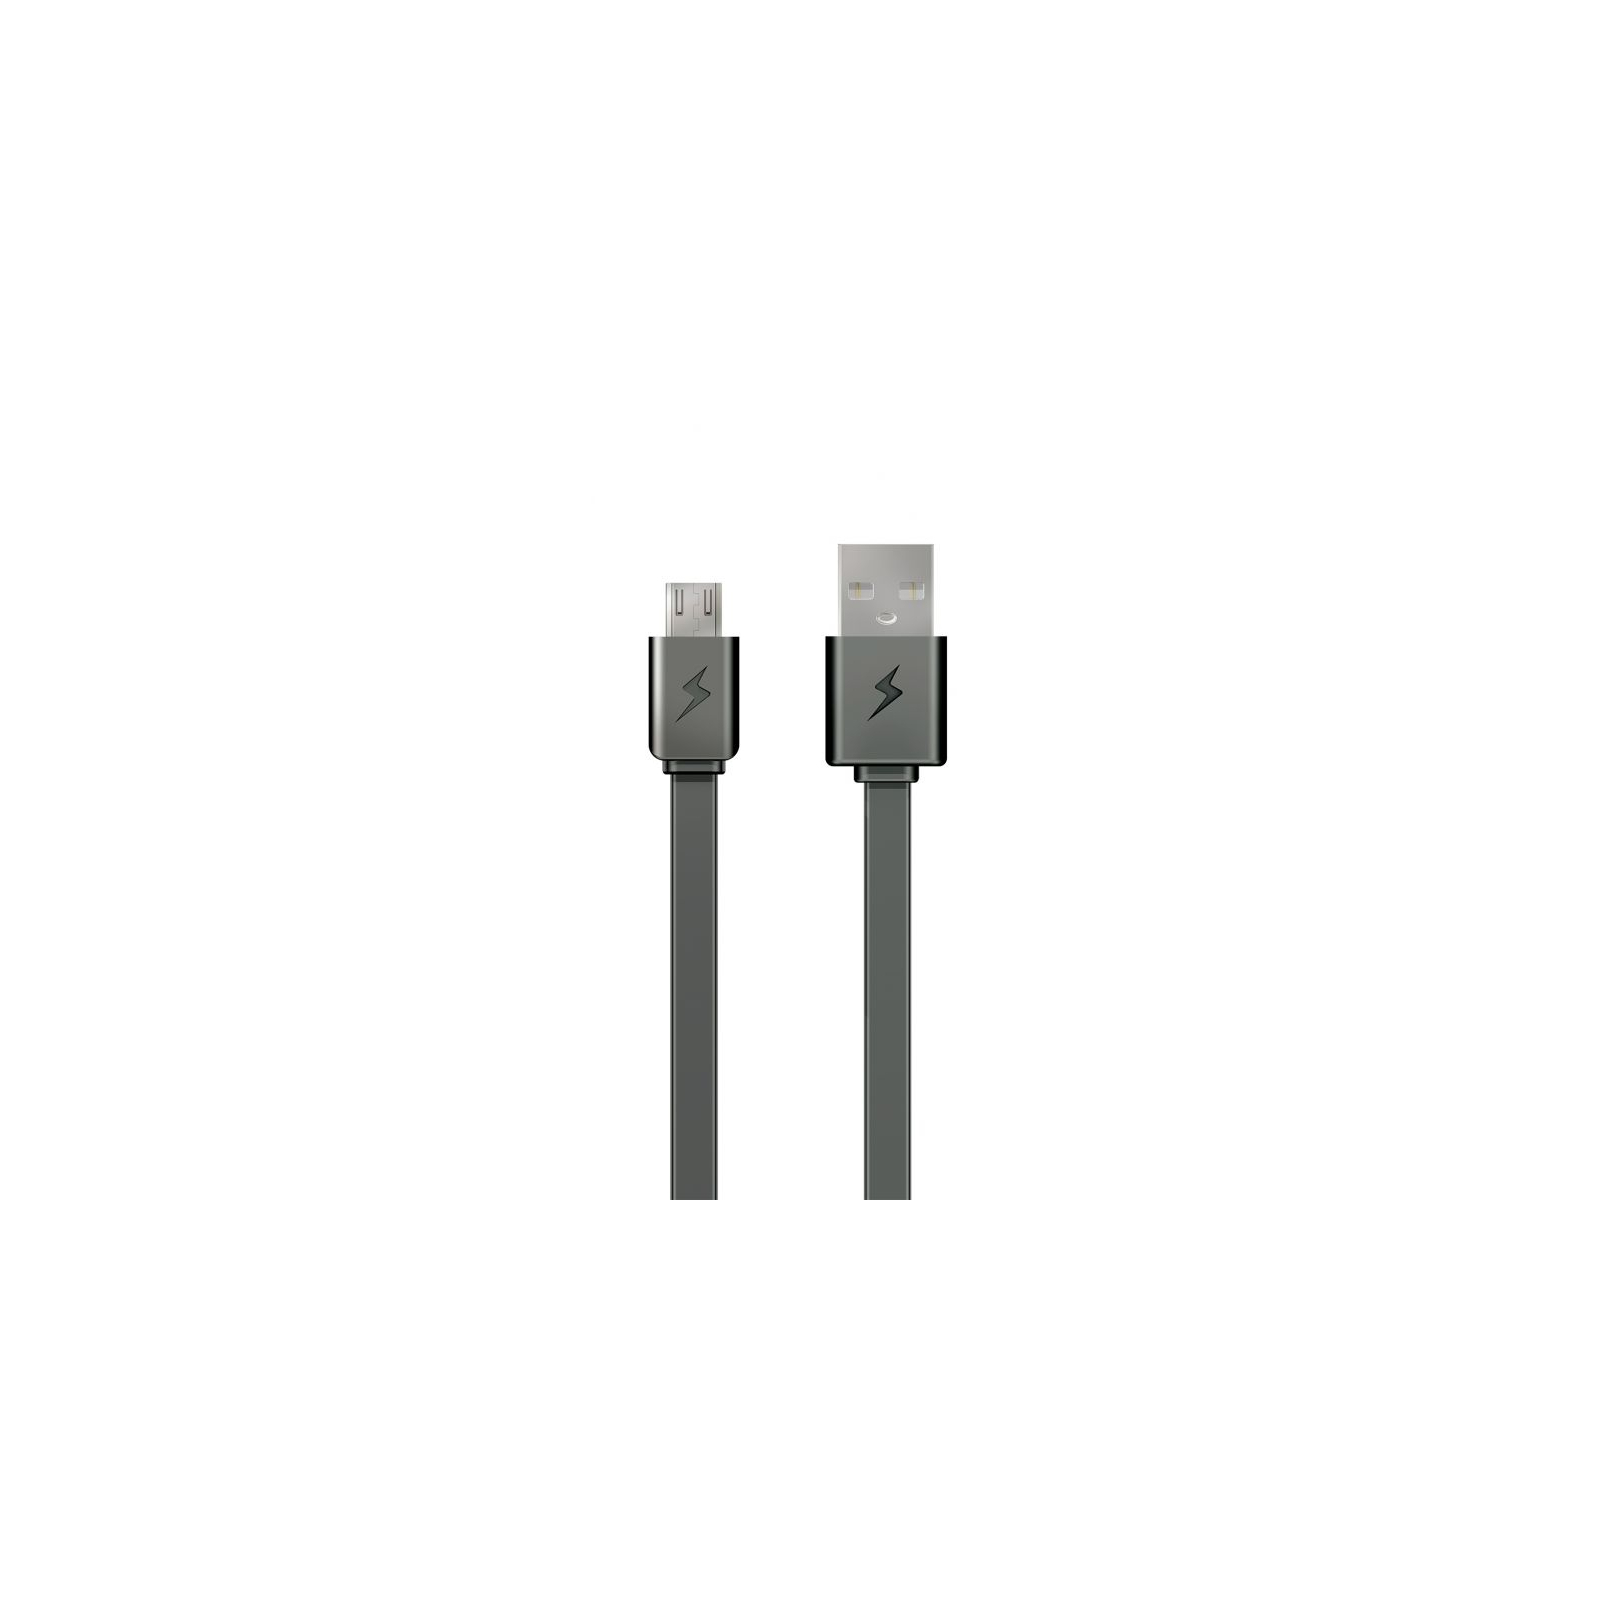 Зарядное устройство E-power Комплект 3в1 2 * USB 2.1A + кабель Lightning (EP812CHS) изображение 5